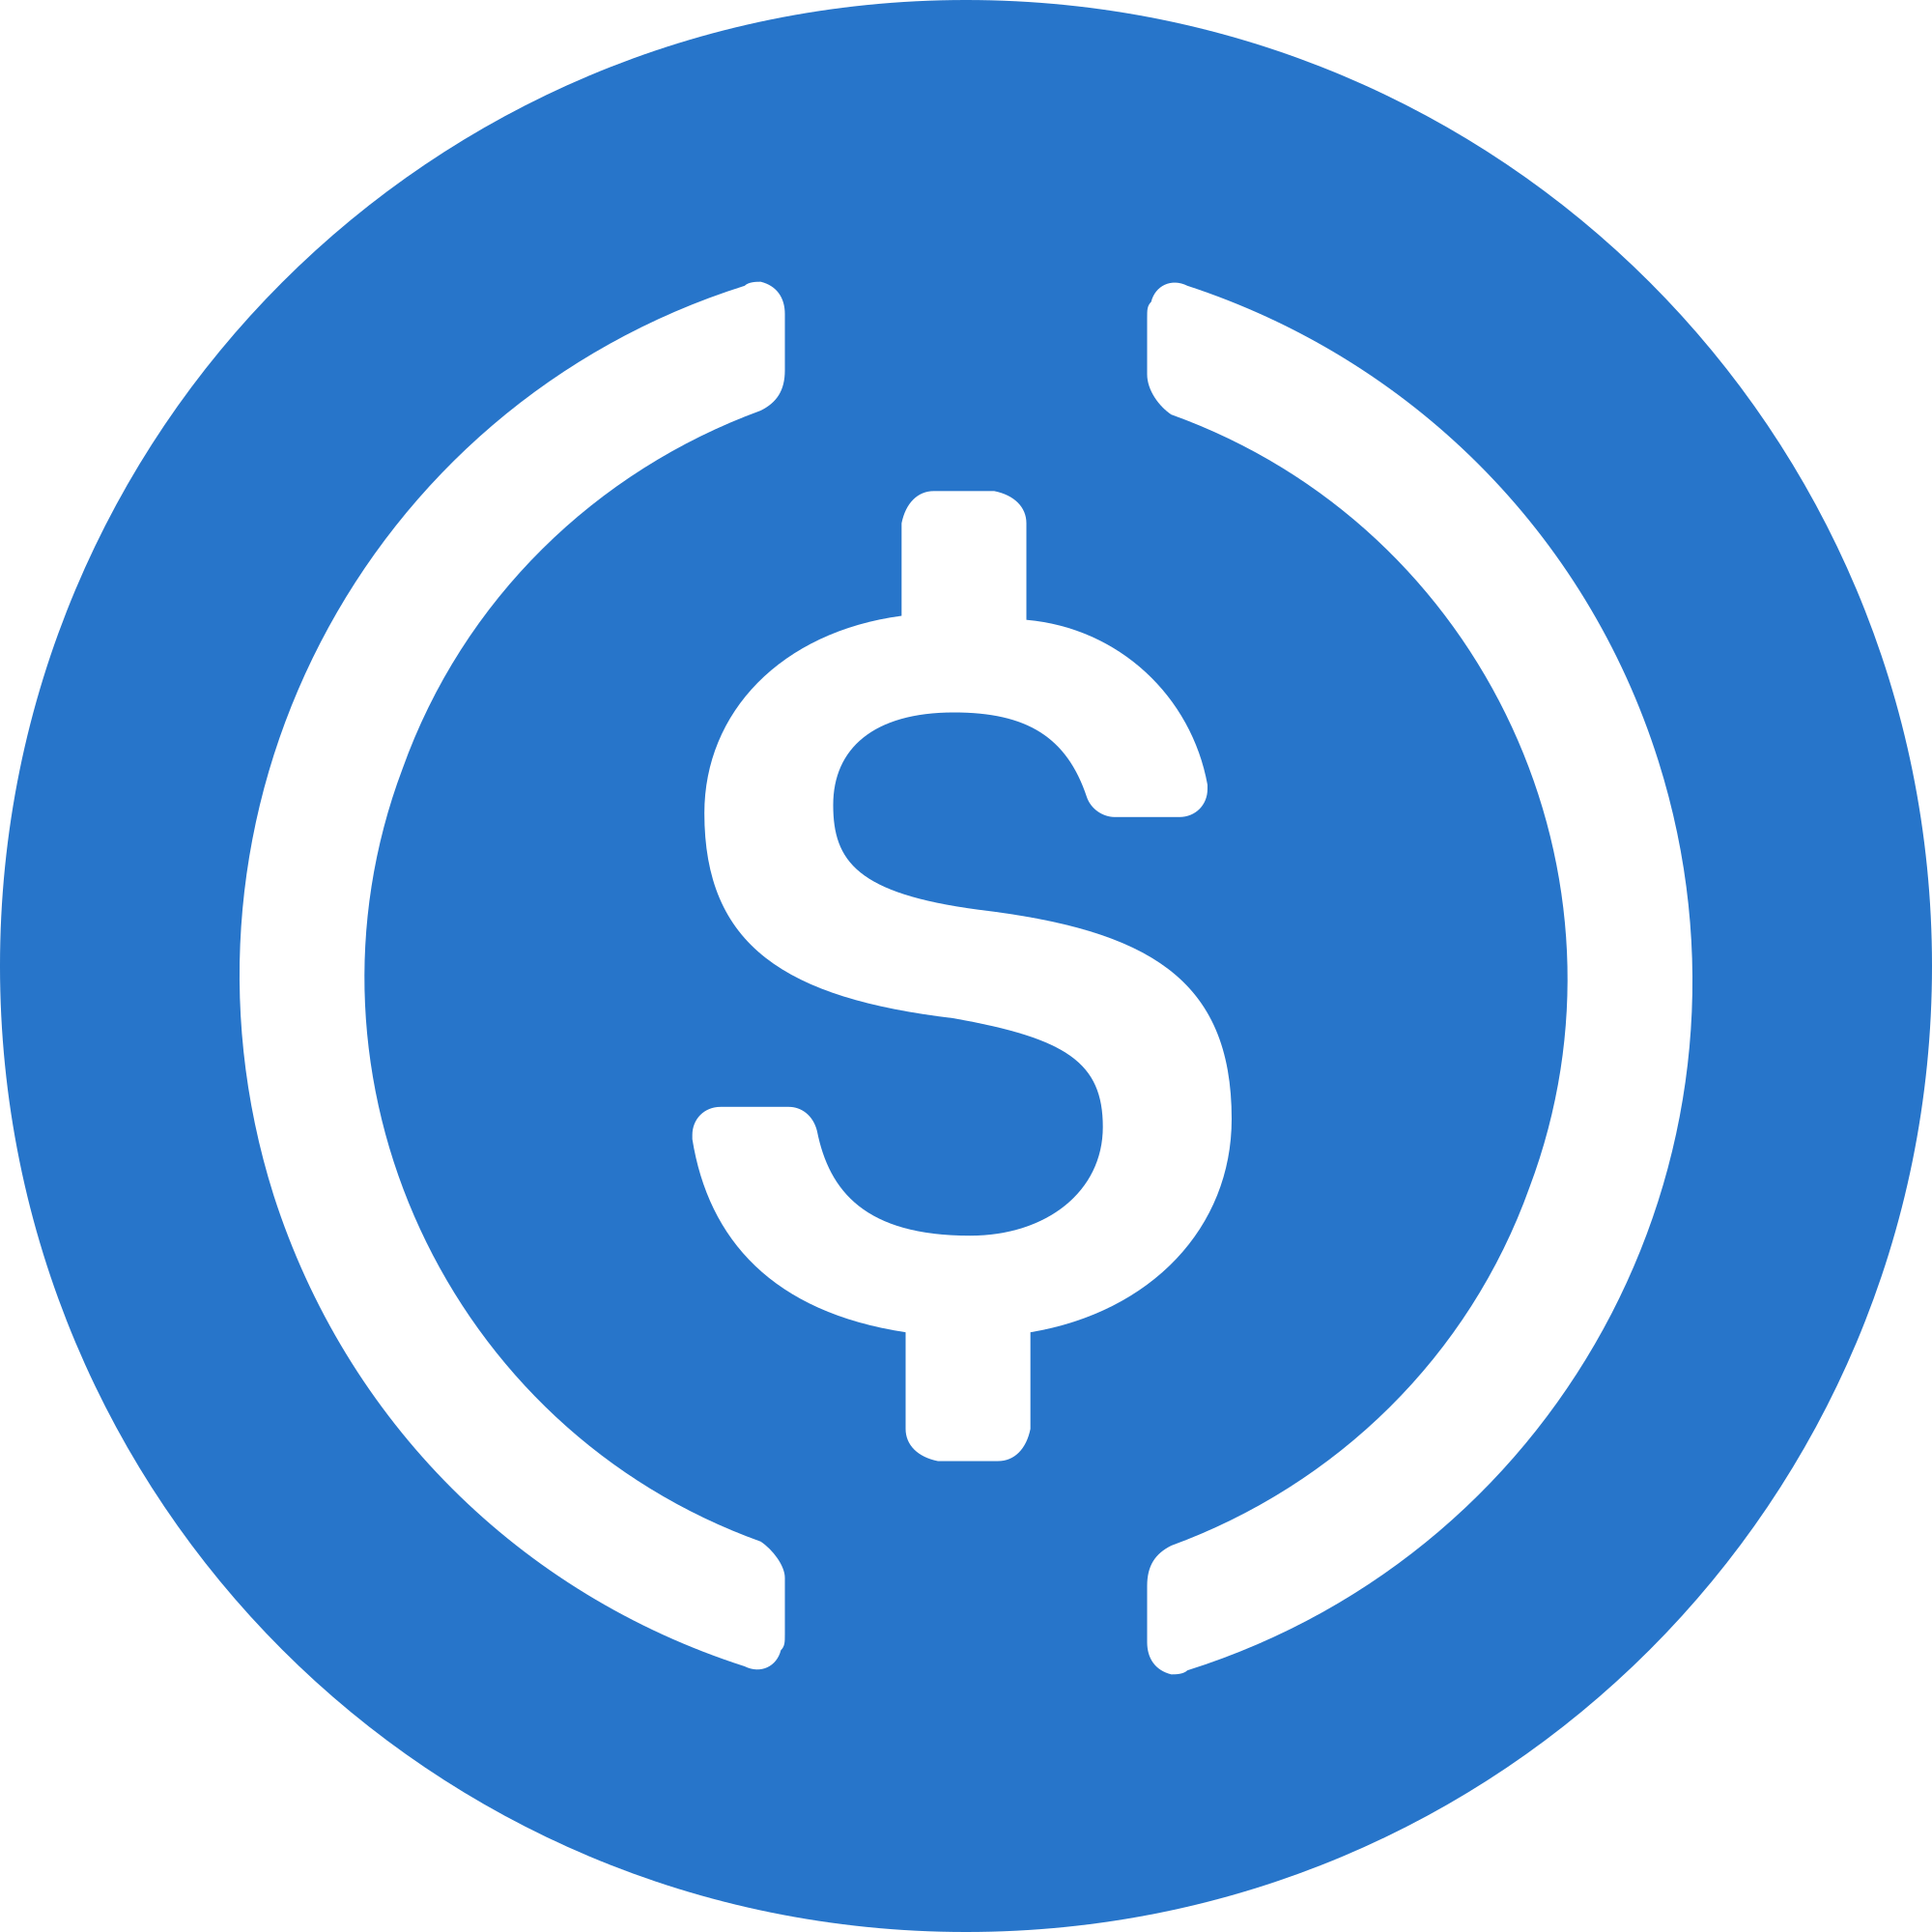 USD Coin Logo